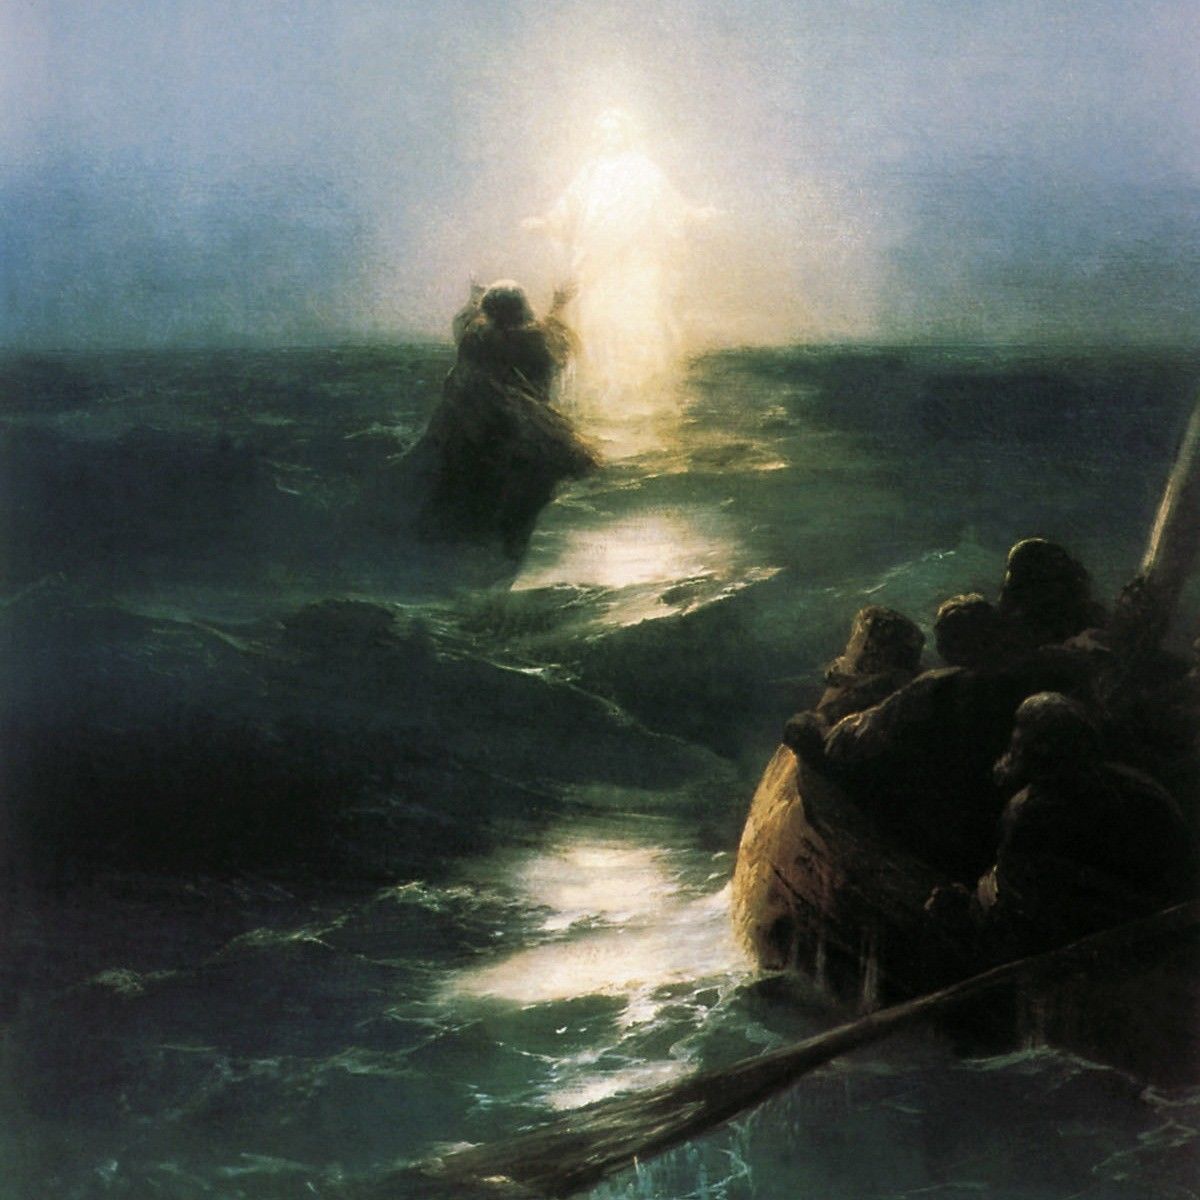 Іван Айвазовський, Ходіння по воді, 1890-ті роки